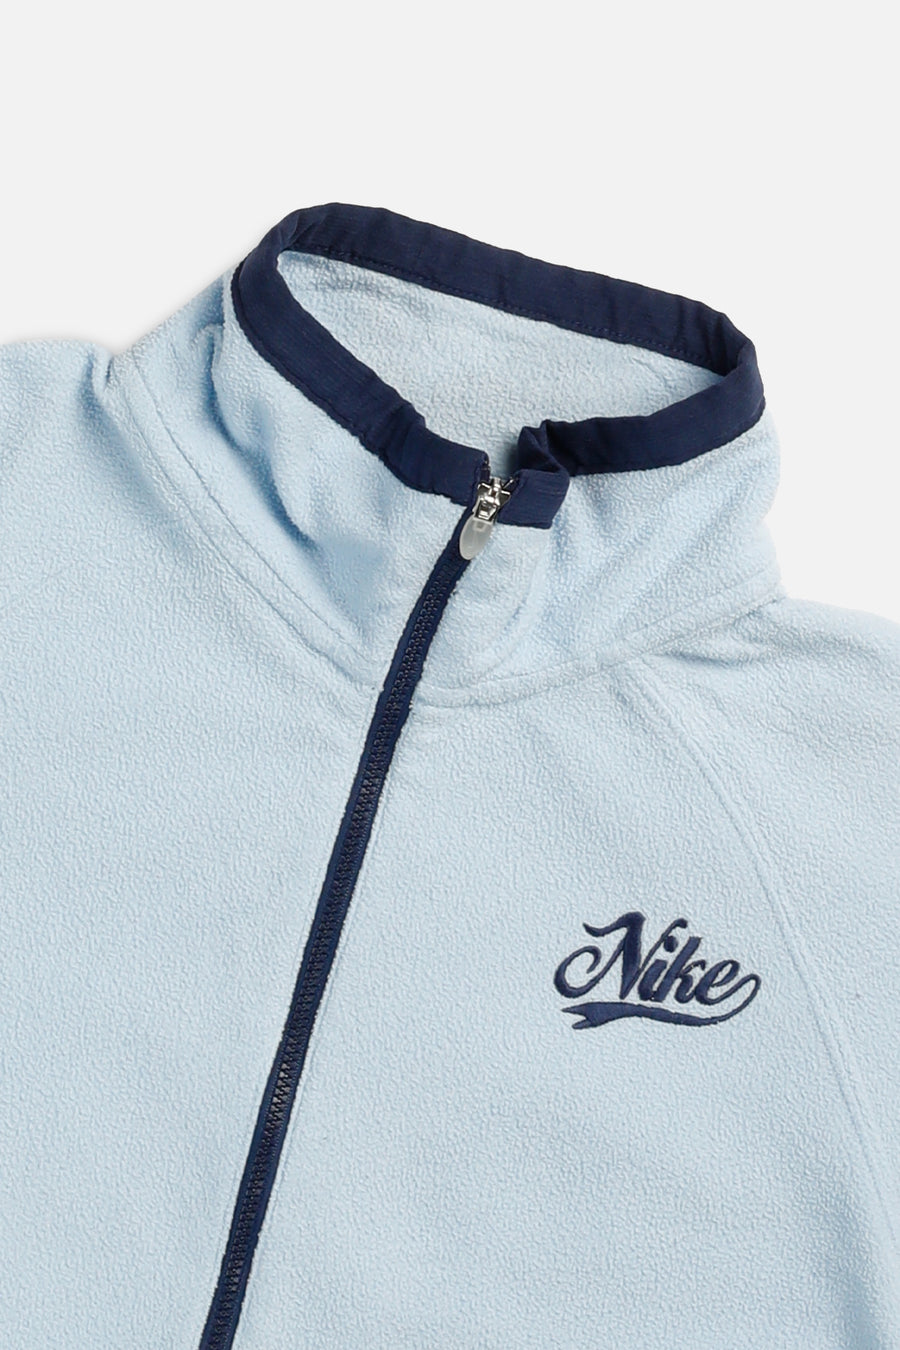 Vintage Nike Fleece Sweater - Women's M